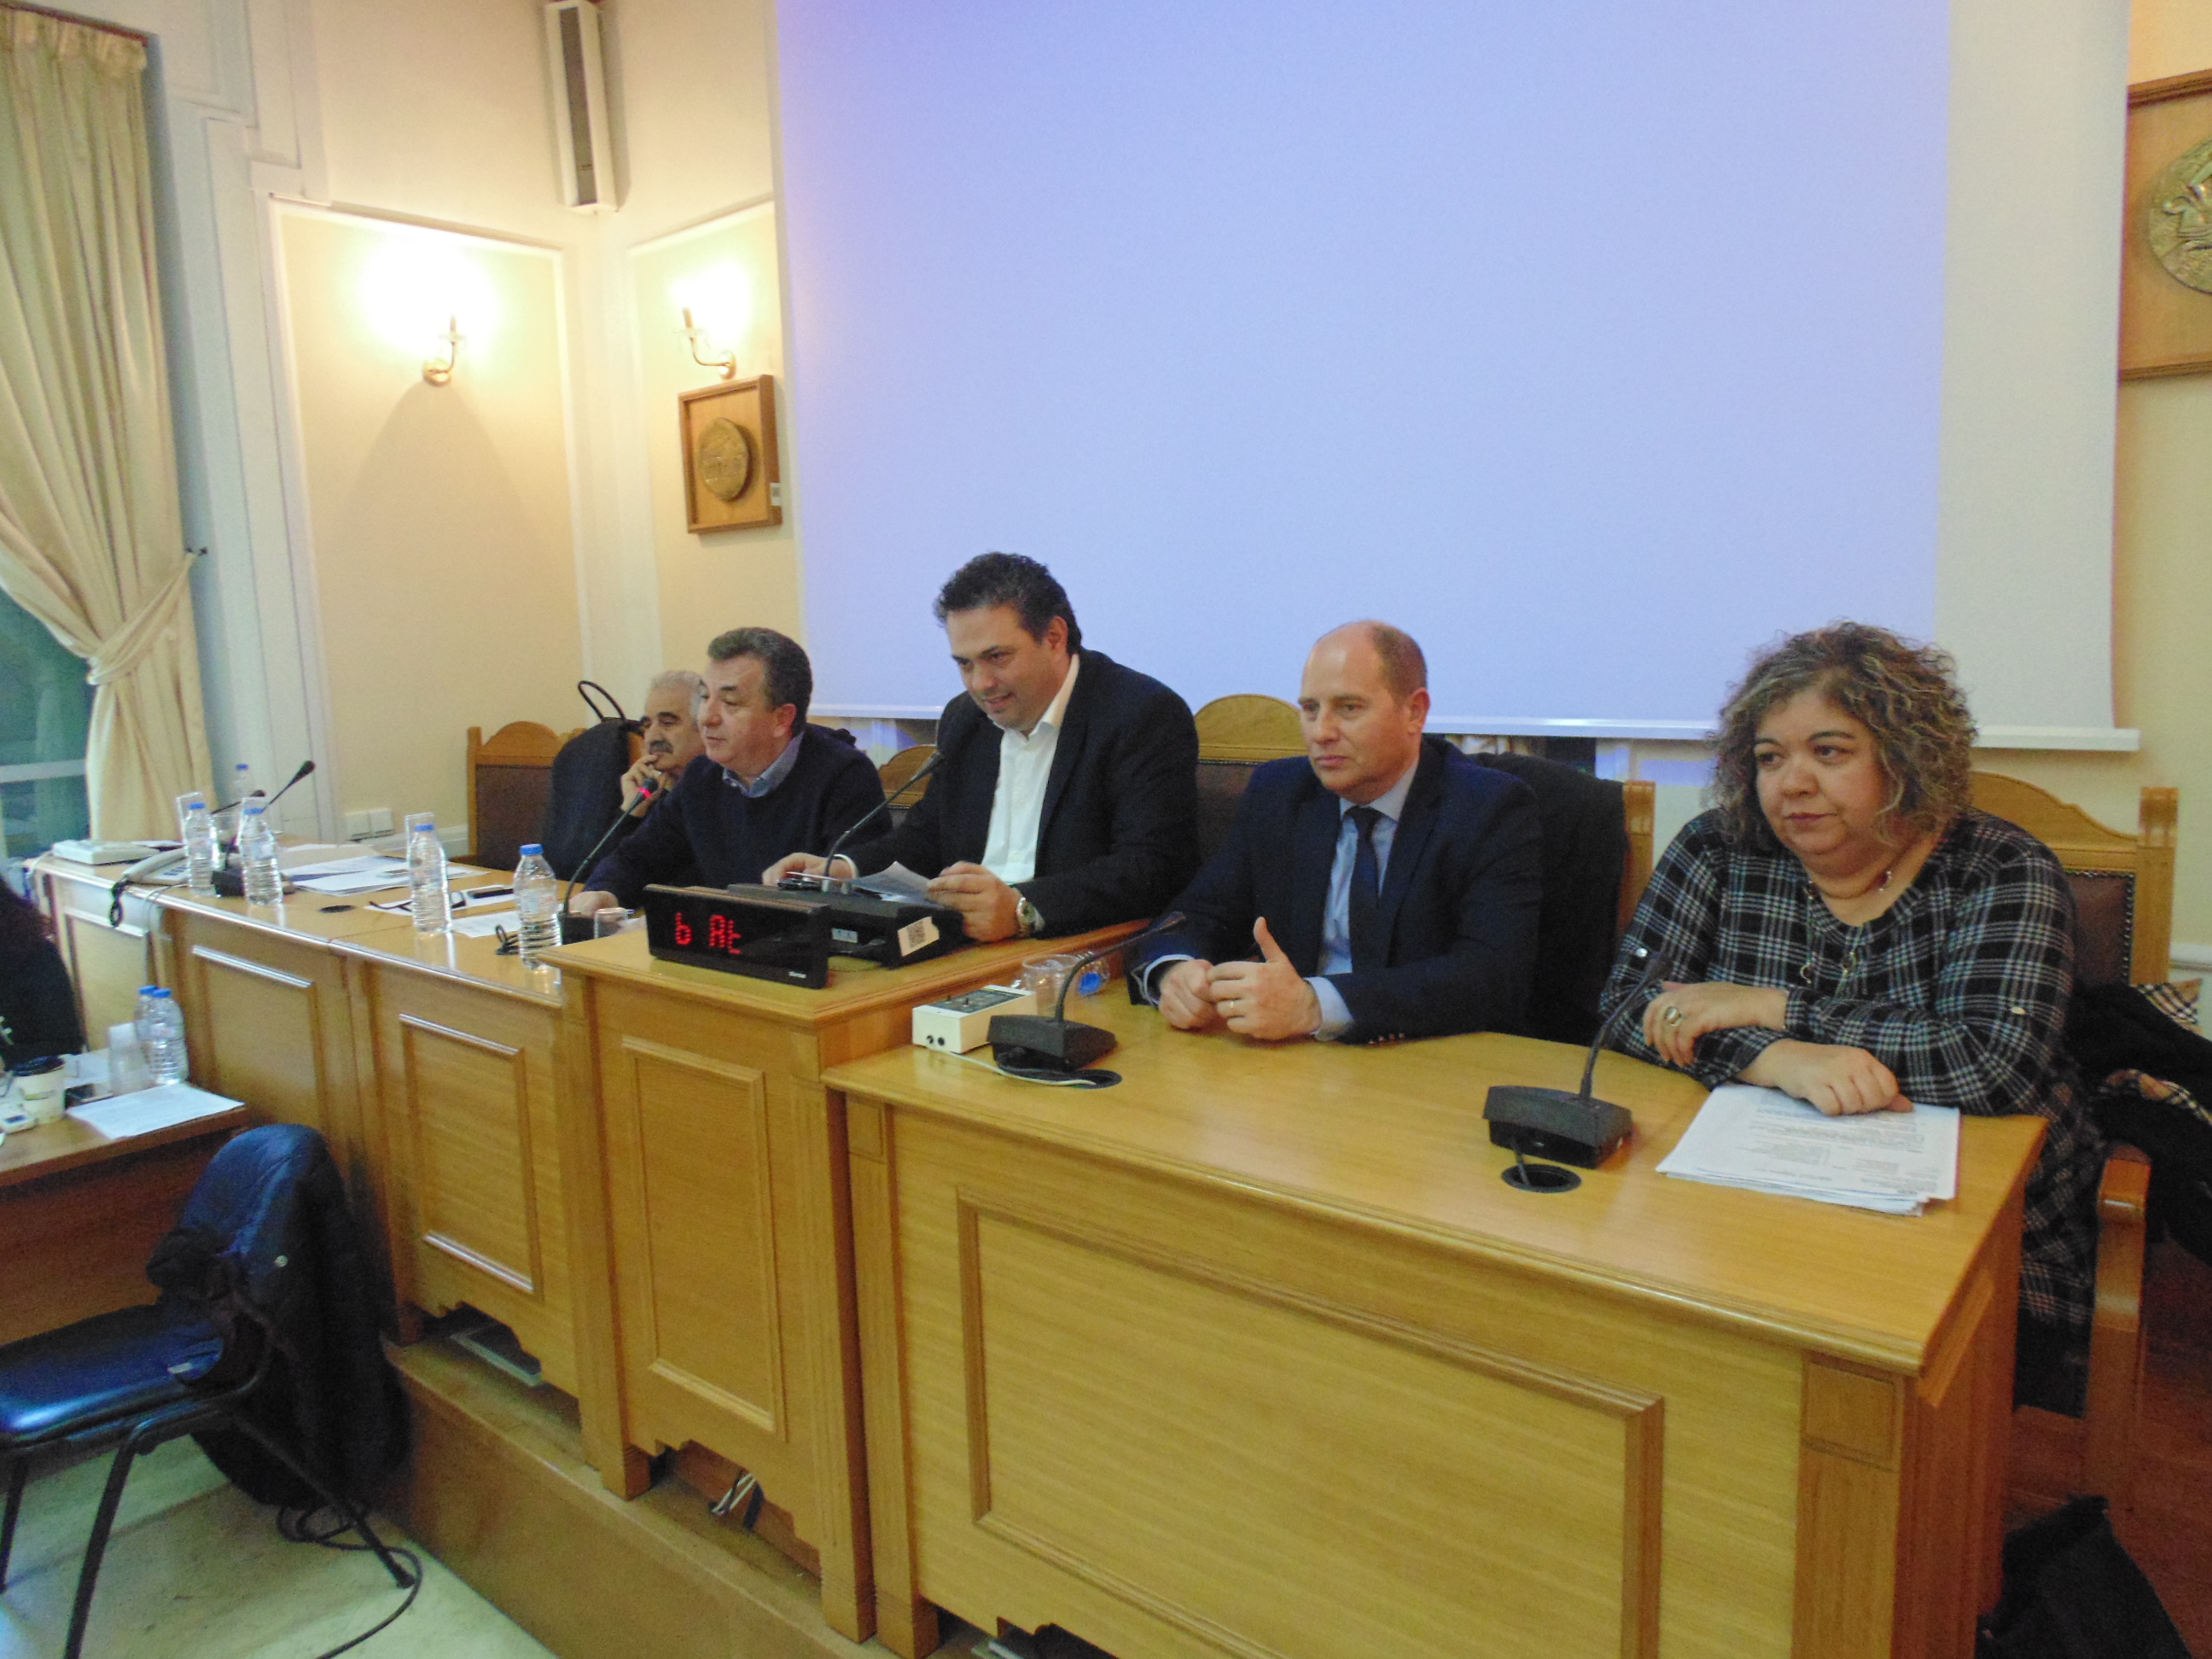 Νέα γραμματέας στο Περιφερειακό Συμβούλιο Κρήτης εξελέγη η Μαρία Βάρδα